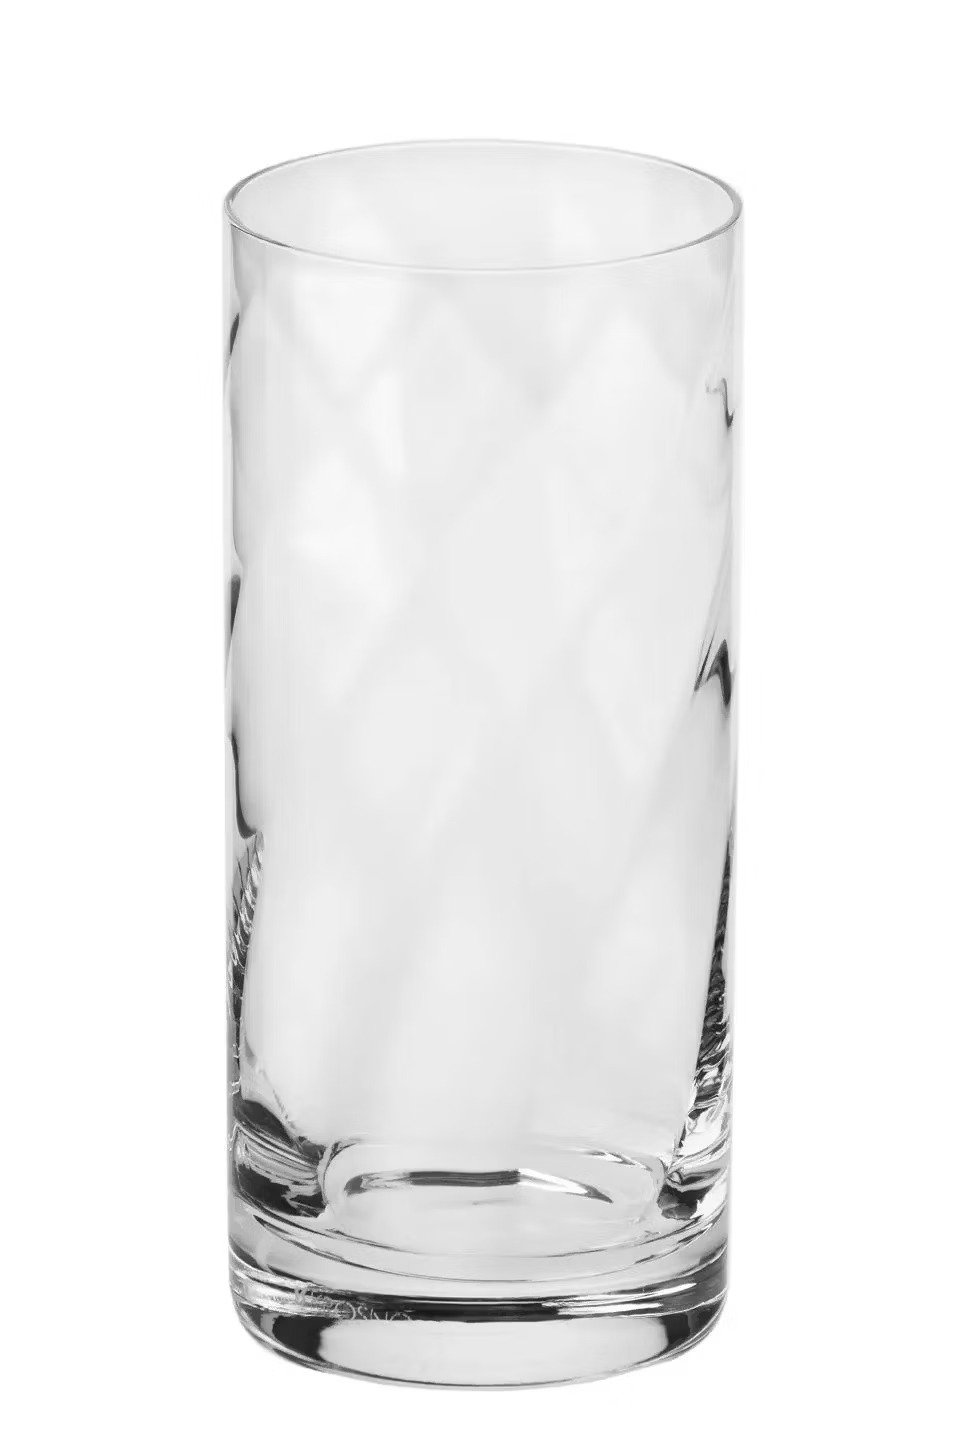 Набор высоких стаканов Krosno Romance, стекло, 380 мл, 6 шт. (790084) - фото 3